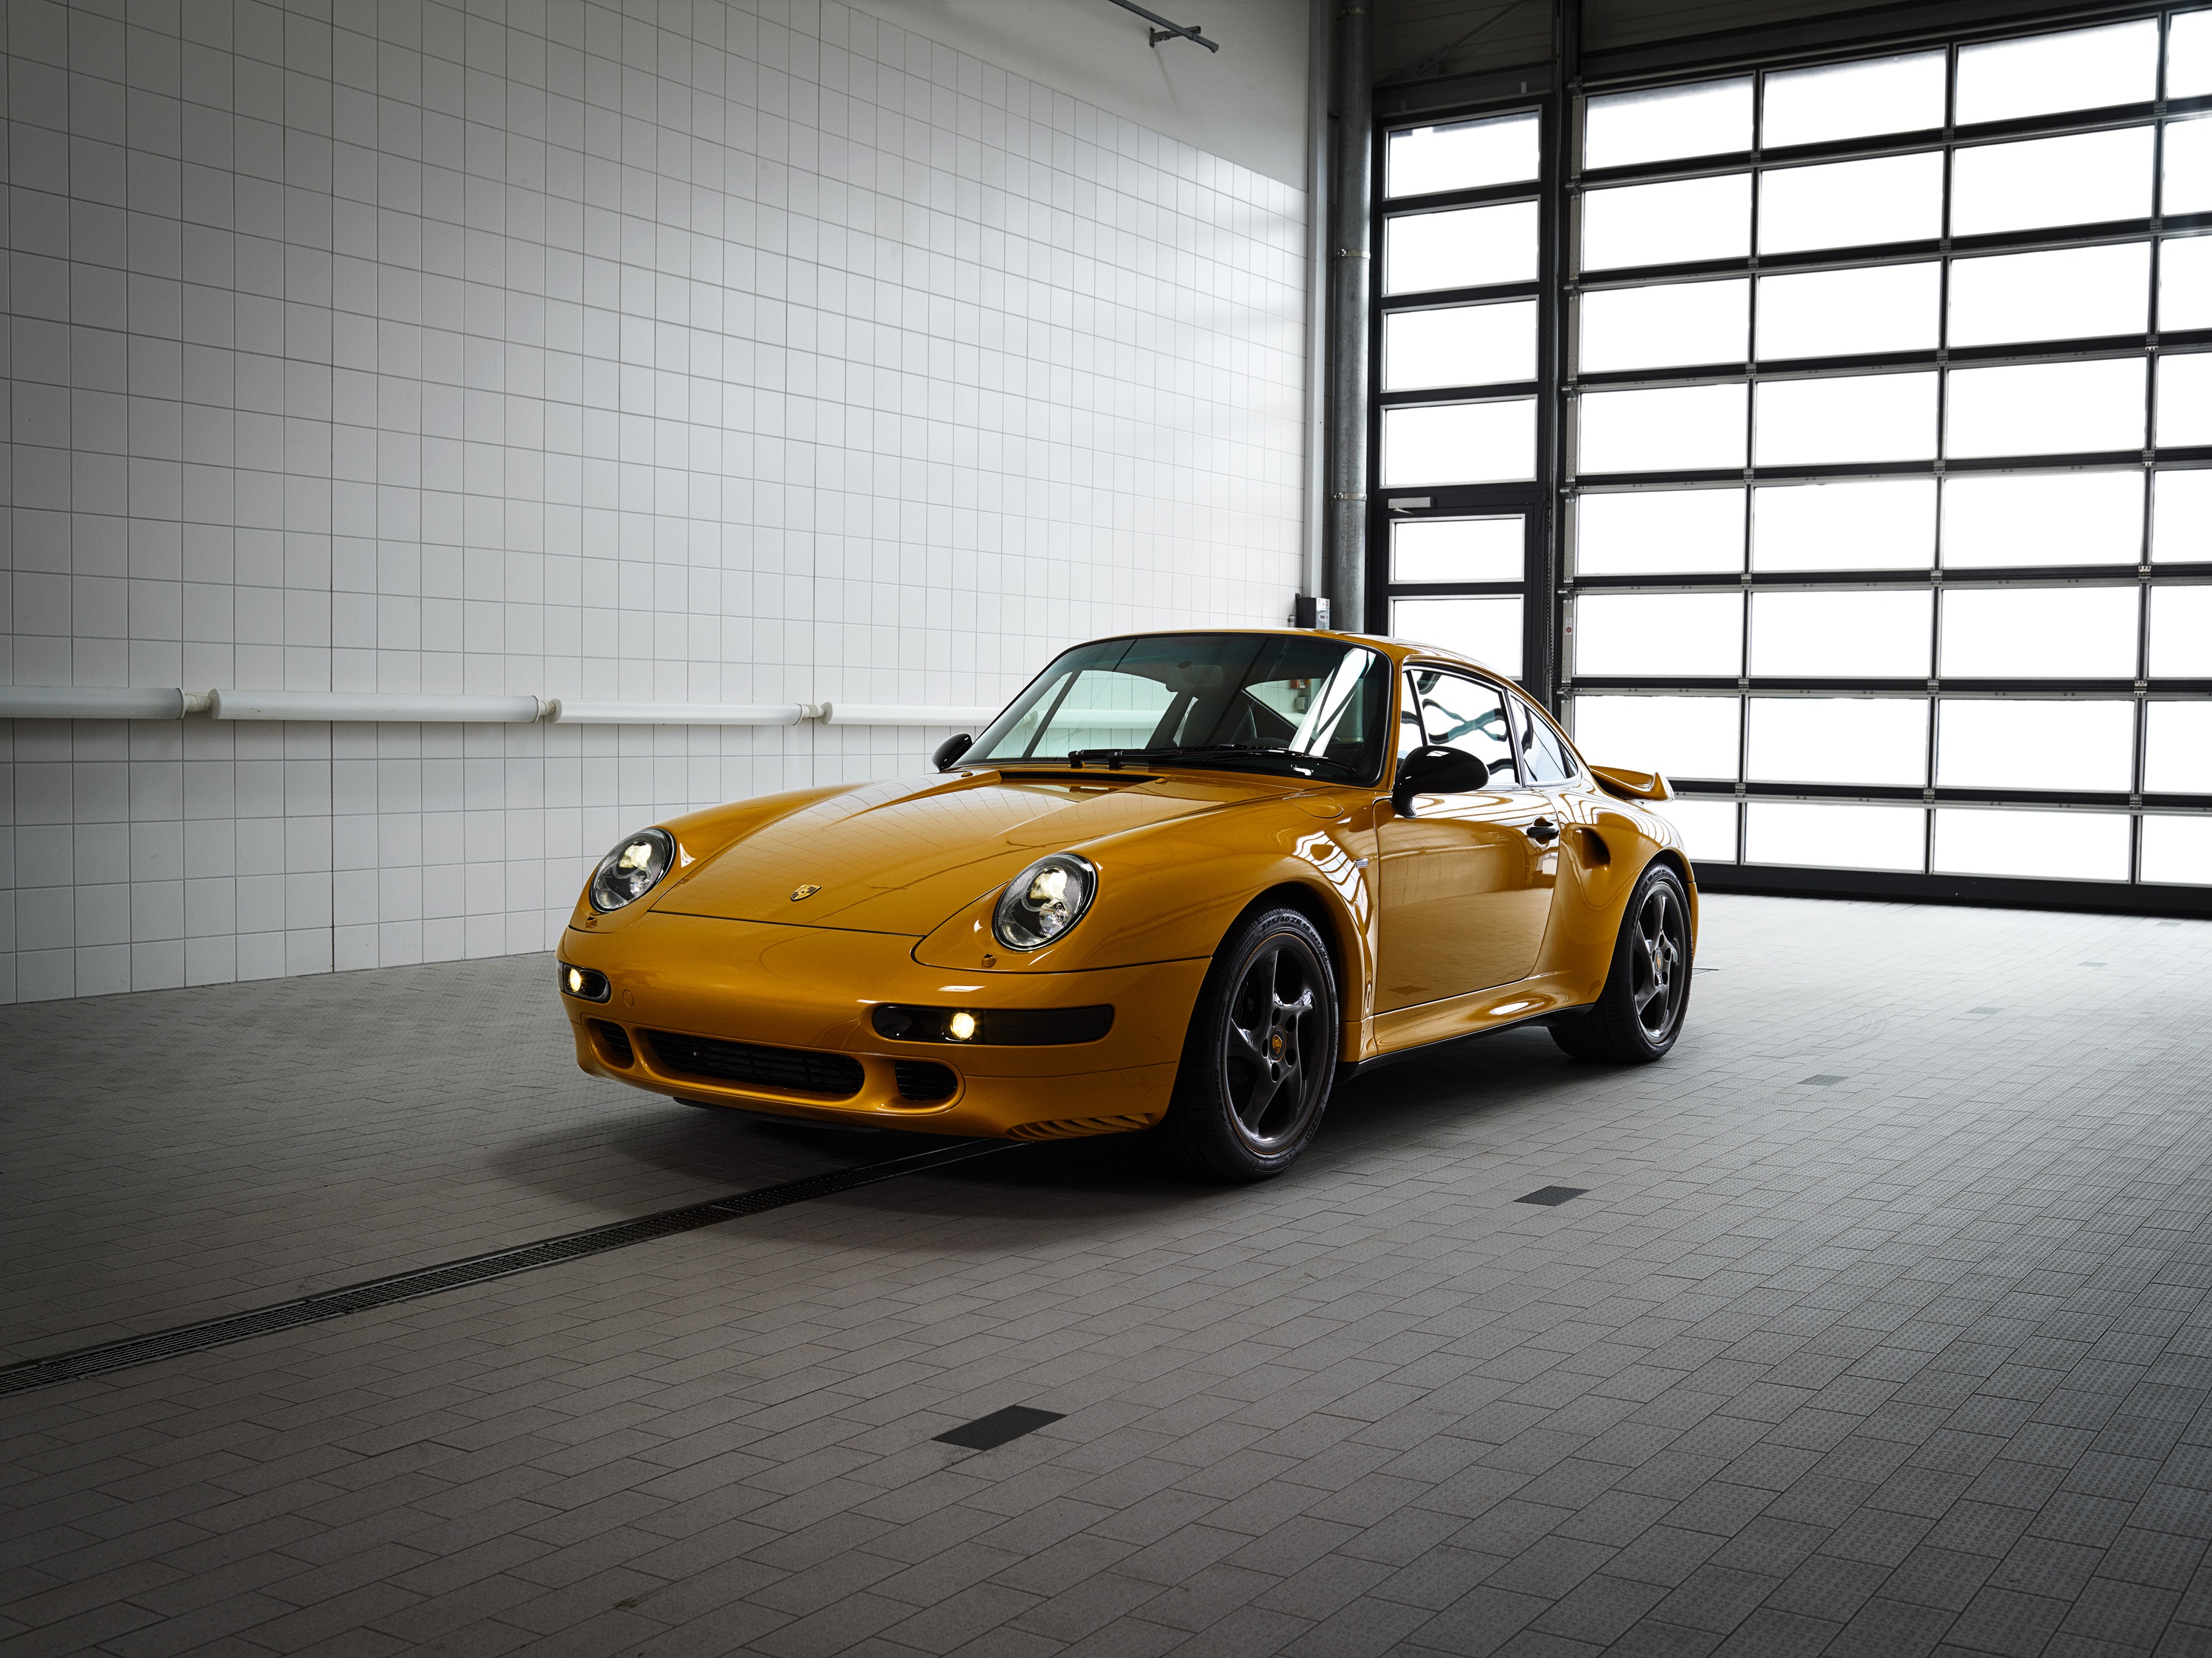 Descarga gratuita de fondo de pantalla para móvil de Porsche, Coche, Vehículos, Coche Amarillo, Porsche 911 Turbo.